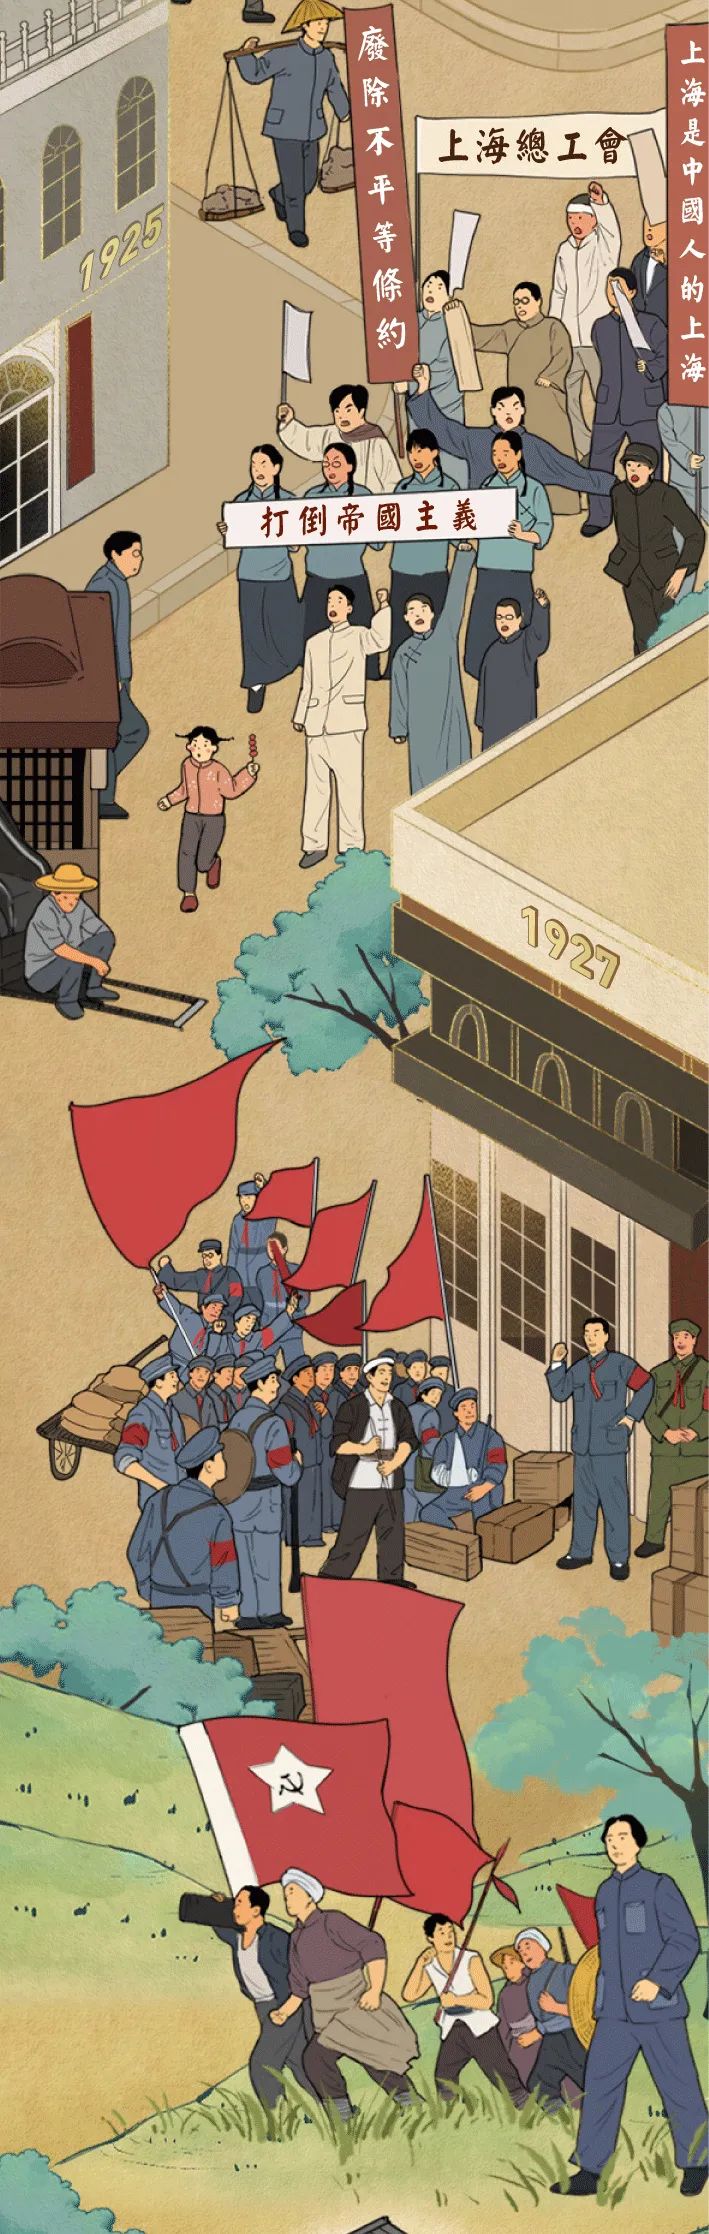 一组漫画带你了解百年党史!1921→2021 - 川观新闻